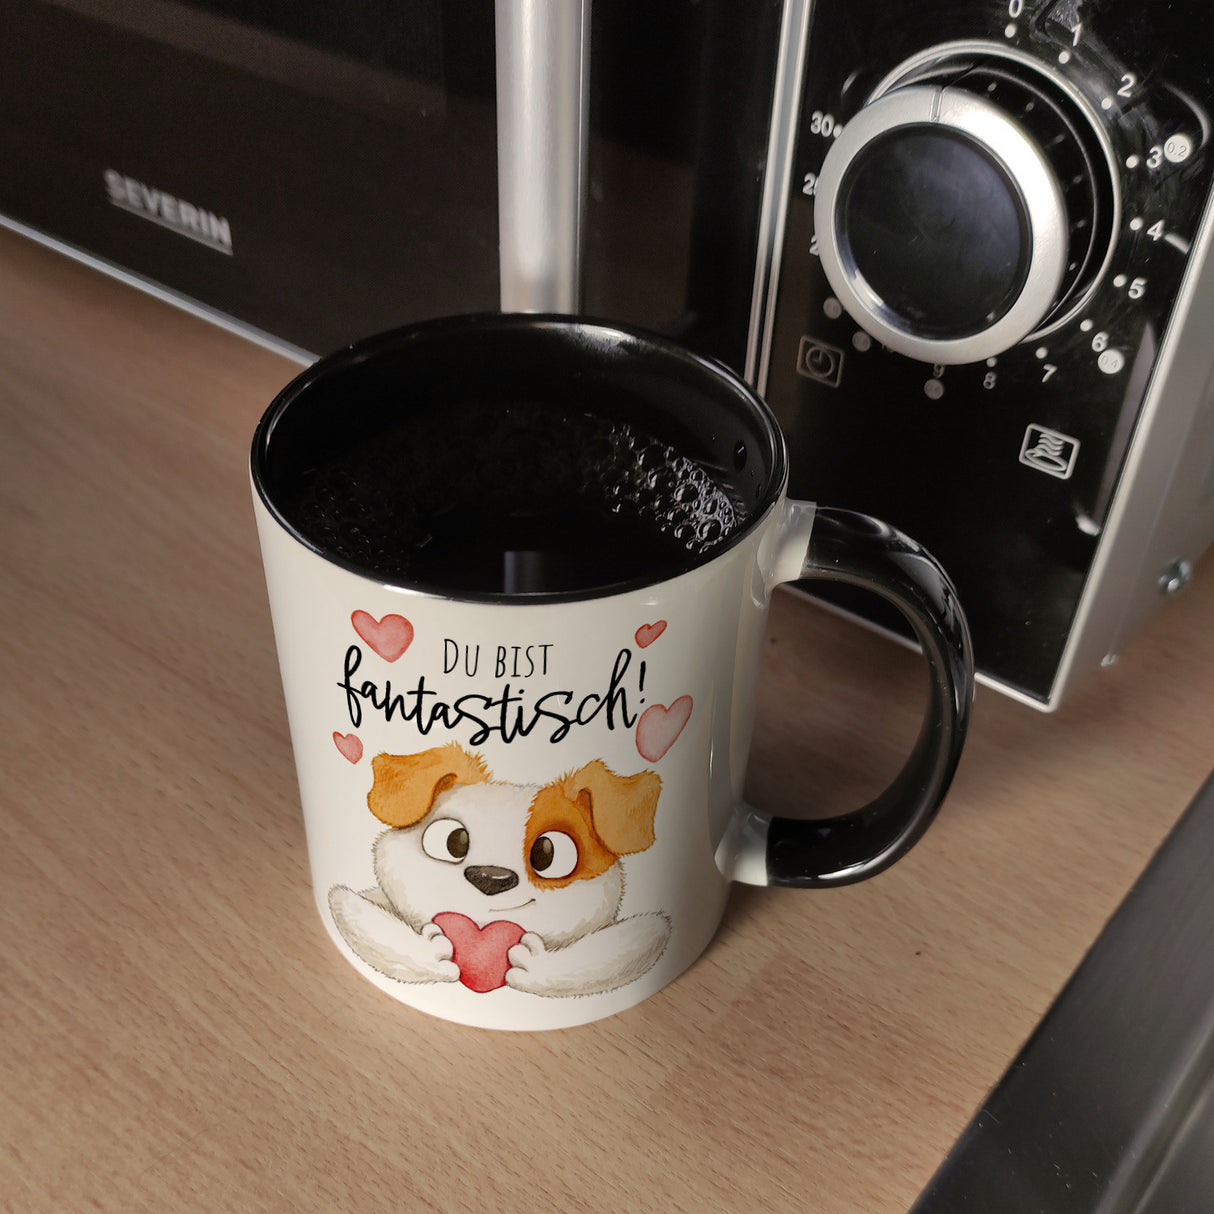 Hund Kaffeebecher mit Spruch Du bist fantastisch